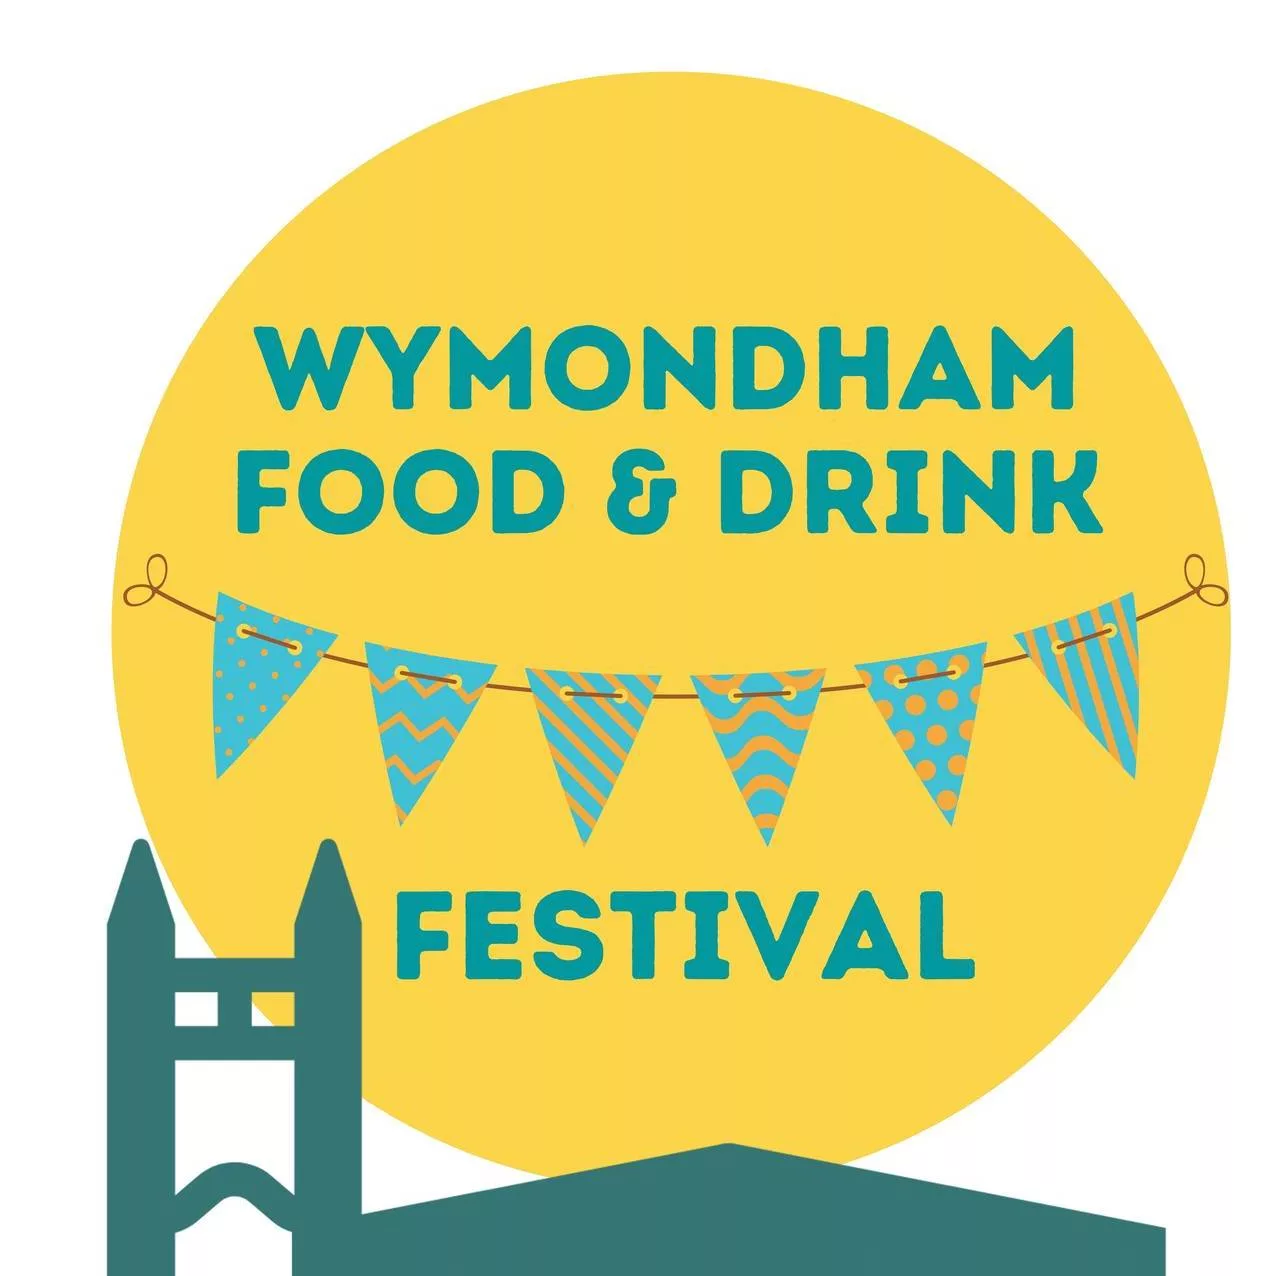 Wymondham Food & Drink Festival